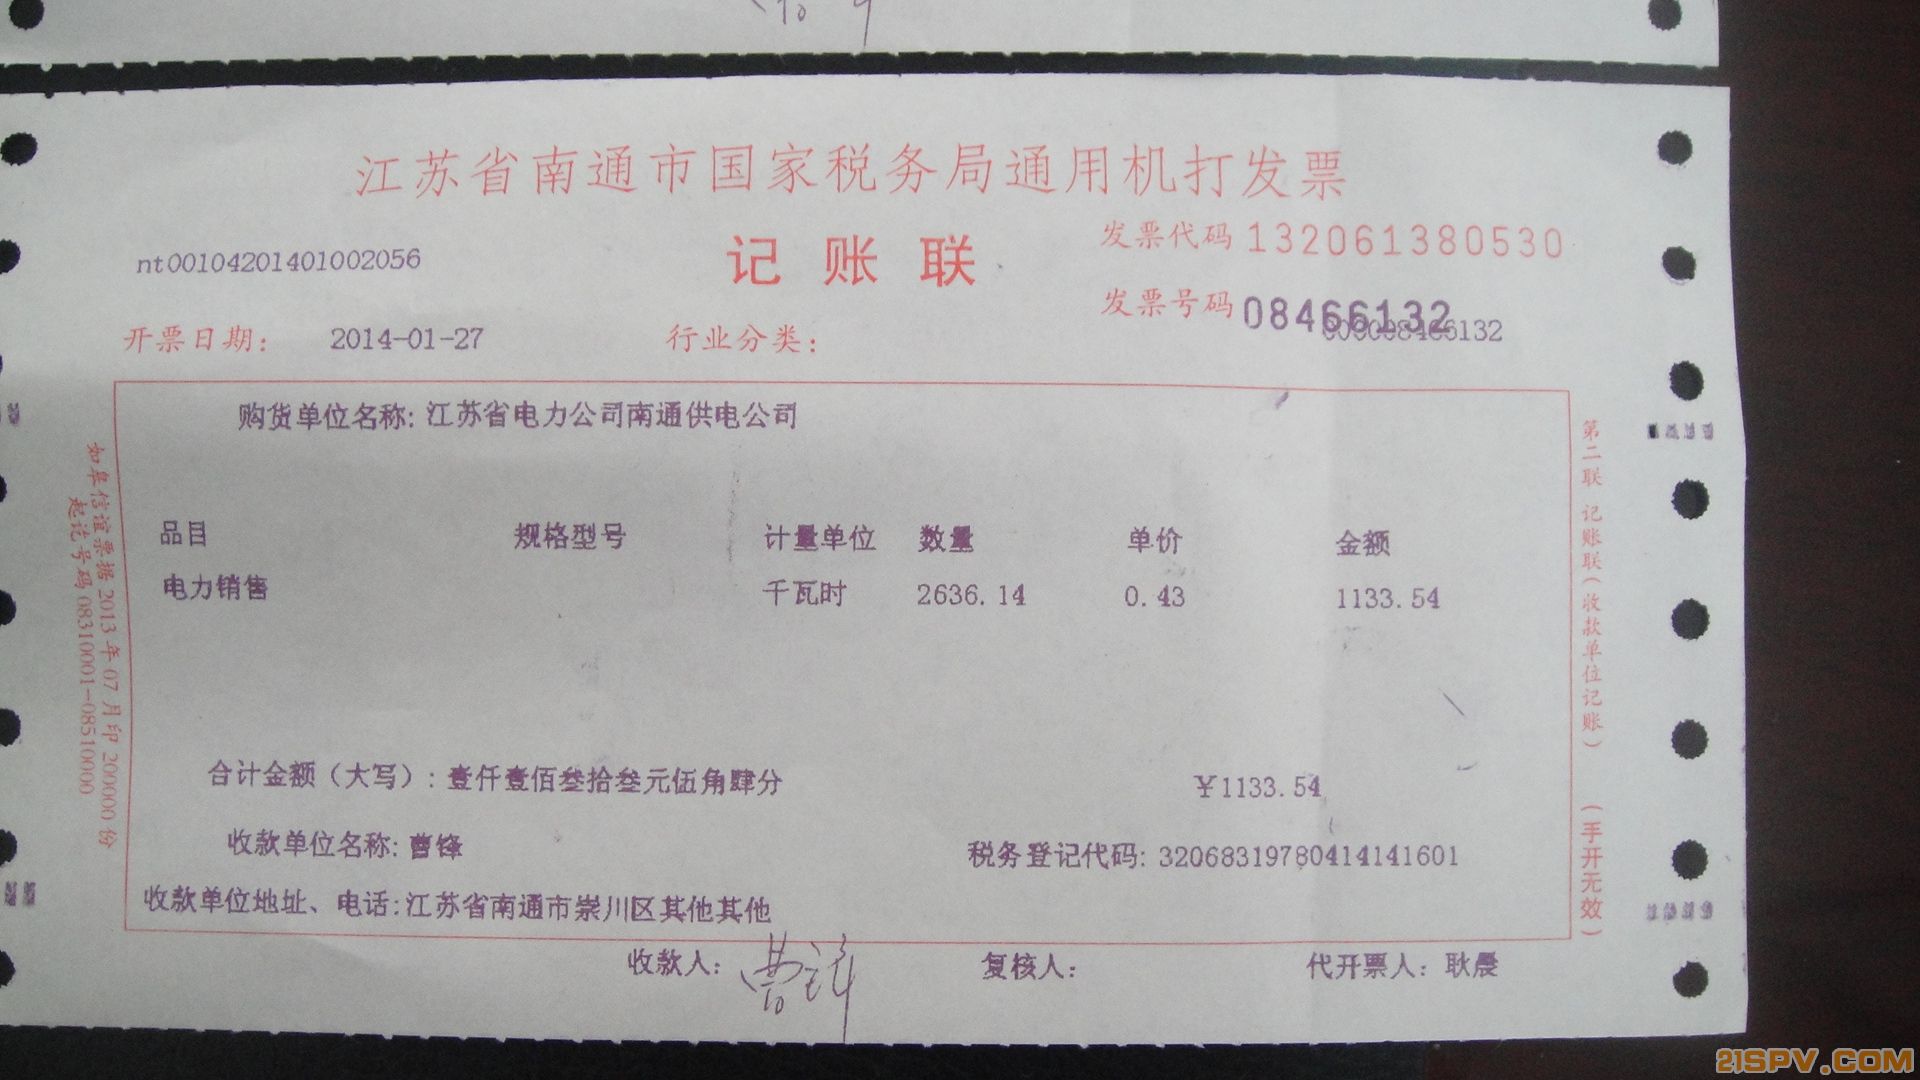 【江苏南通】个人光伏电站 电费和补贴已经结算(附各种发票图片)